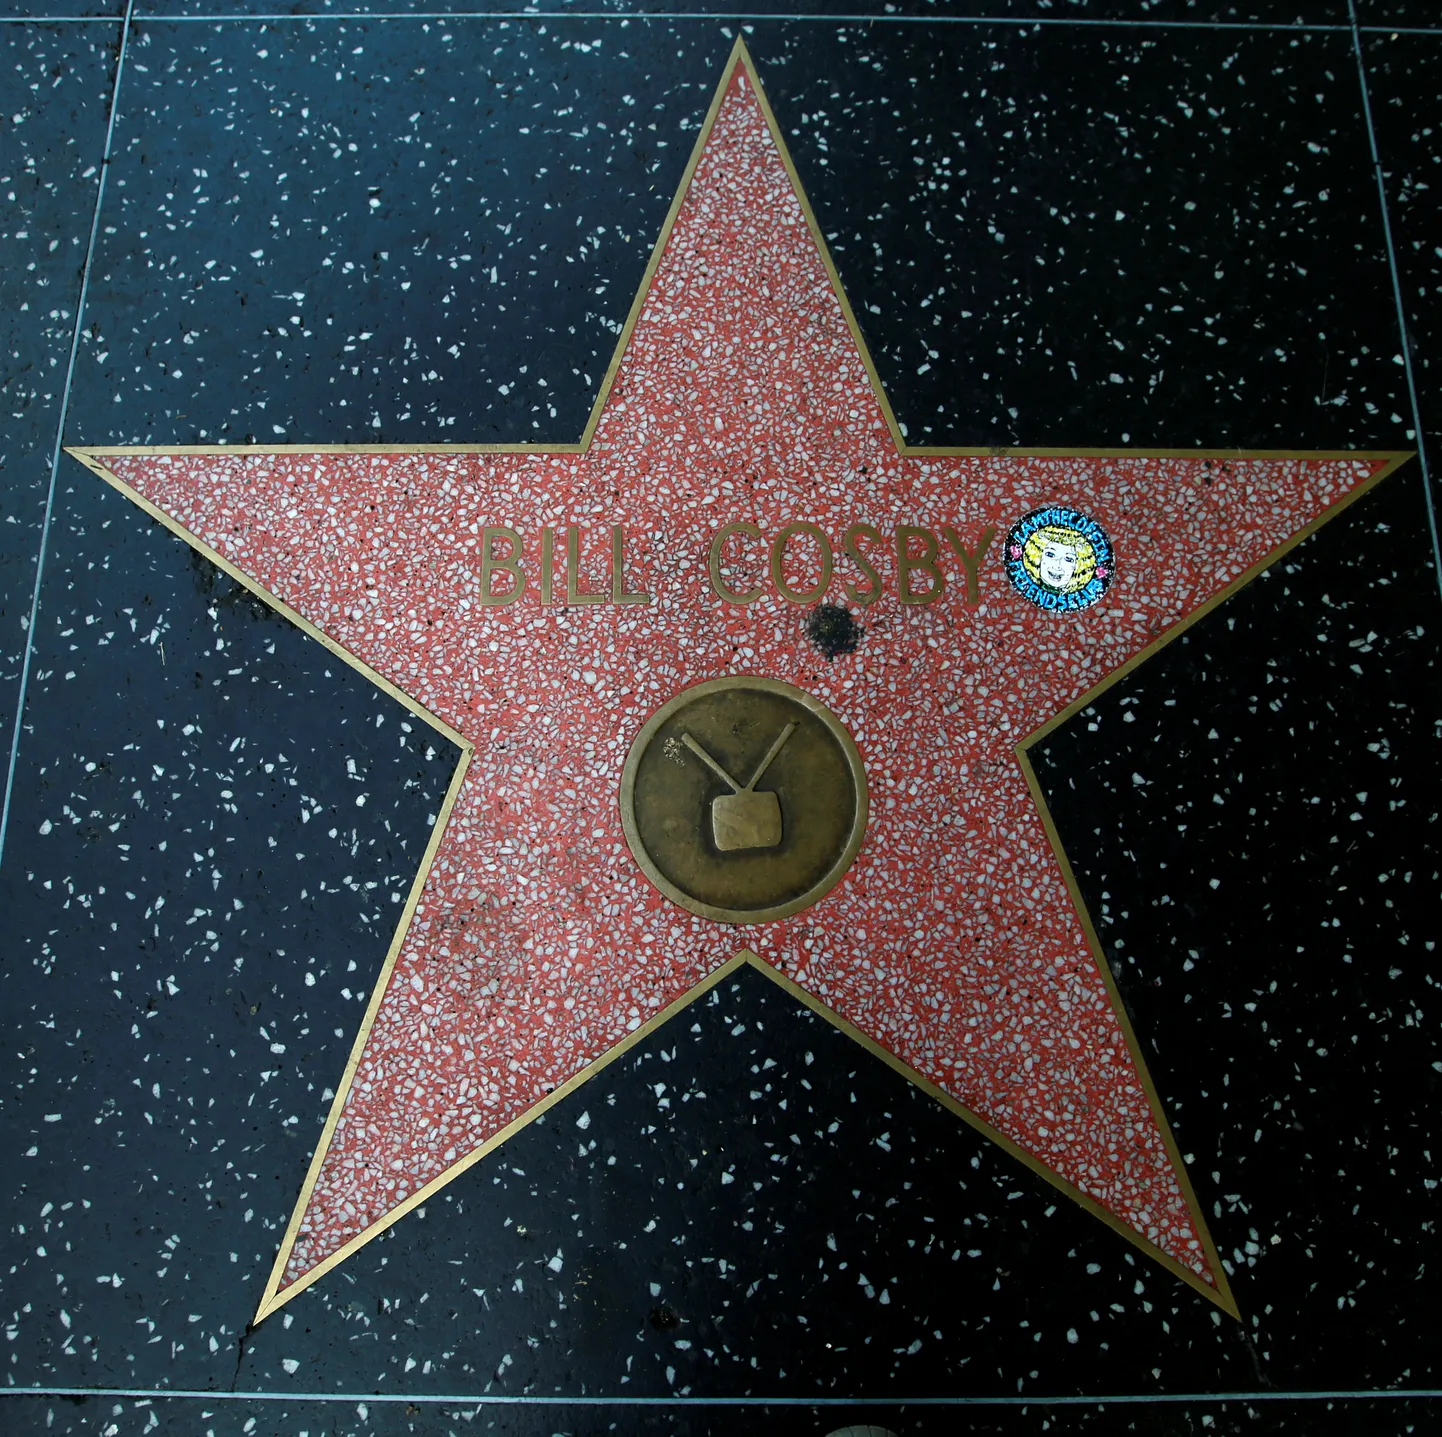 Koomik Bill Cosby täht Hollywoodi kuulsuste alleel.